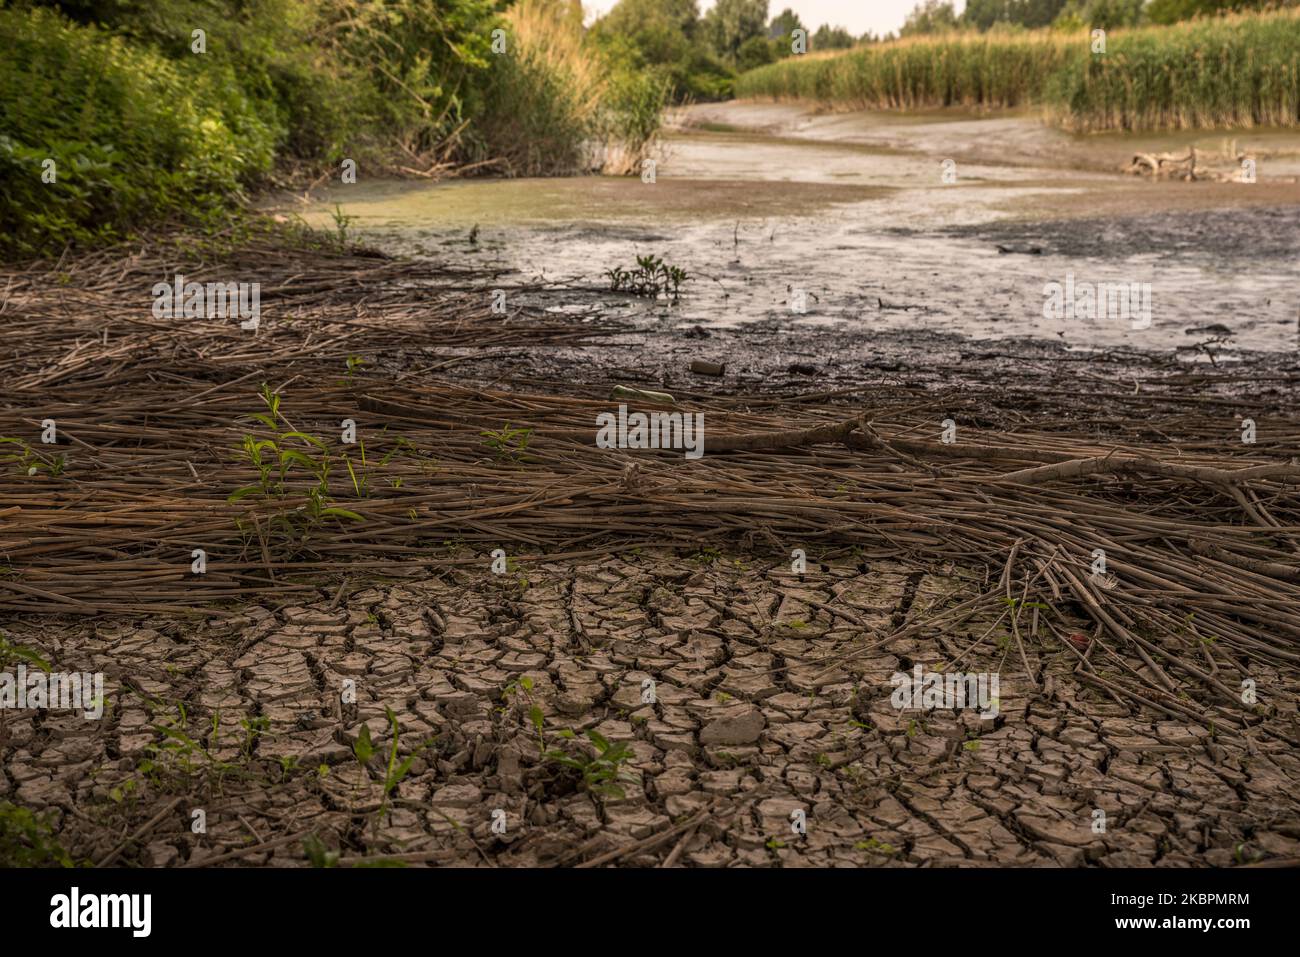 Am 03. Juni 2020 ist in Ghentbrugge, Belgien, ein niedriger Wasserstand in Flüssen und Grundwasser zu beobachten.Es ist noch kein Sommer, es ist eigentlich noch Frühling, und das ist sehr alarmierend für belgische Landwirte und Haushalte. Klimastörungen werden uns weiterhin mit Dürre, Überschwemmungen, Hitzewellen und dem Verlust der biologischen Vielfalt konfrontiert, sagt Wassermanagementexperte der KU Leuven. Der Monat Mai wird auch der trockenste seit 200 Jahren. Meteorologen sagen, dass die Niederschlagsmengen in diesem Monat niedrig sind (Foto: Jonathan Raa/NurPhoto) Stockfoto